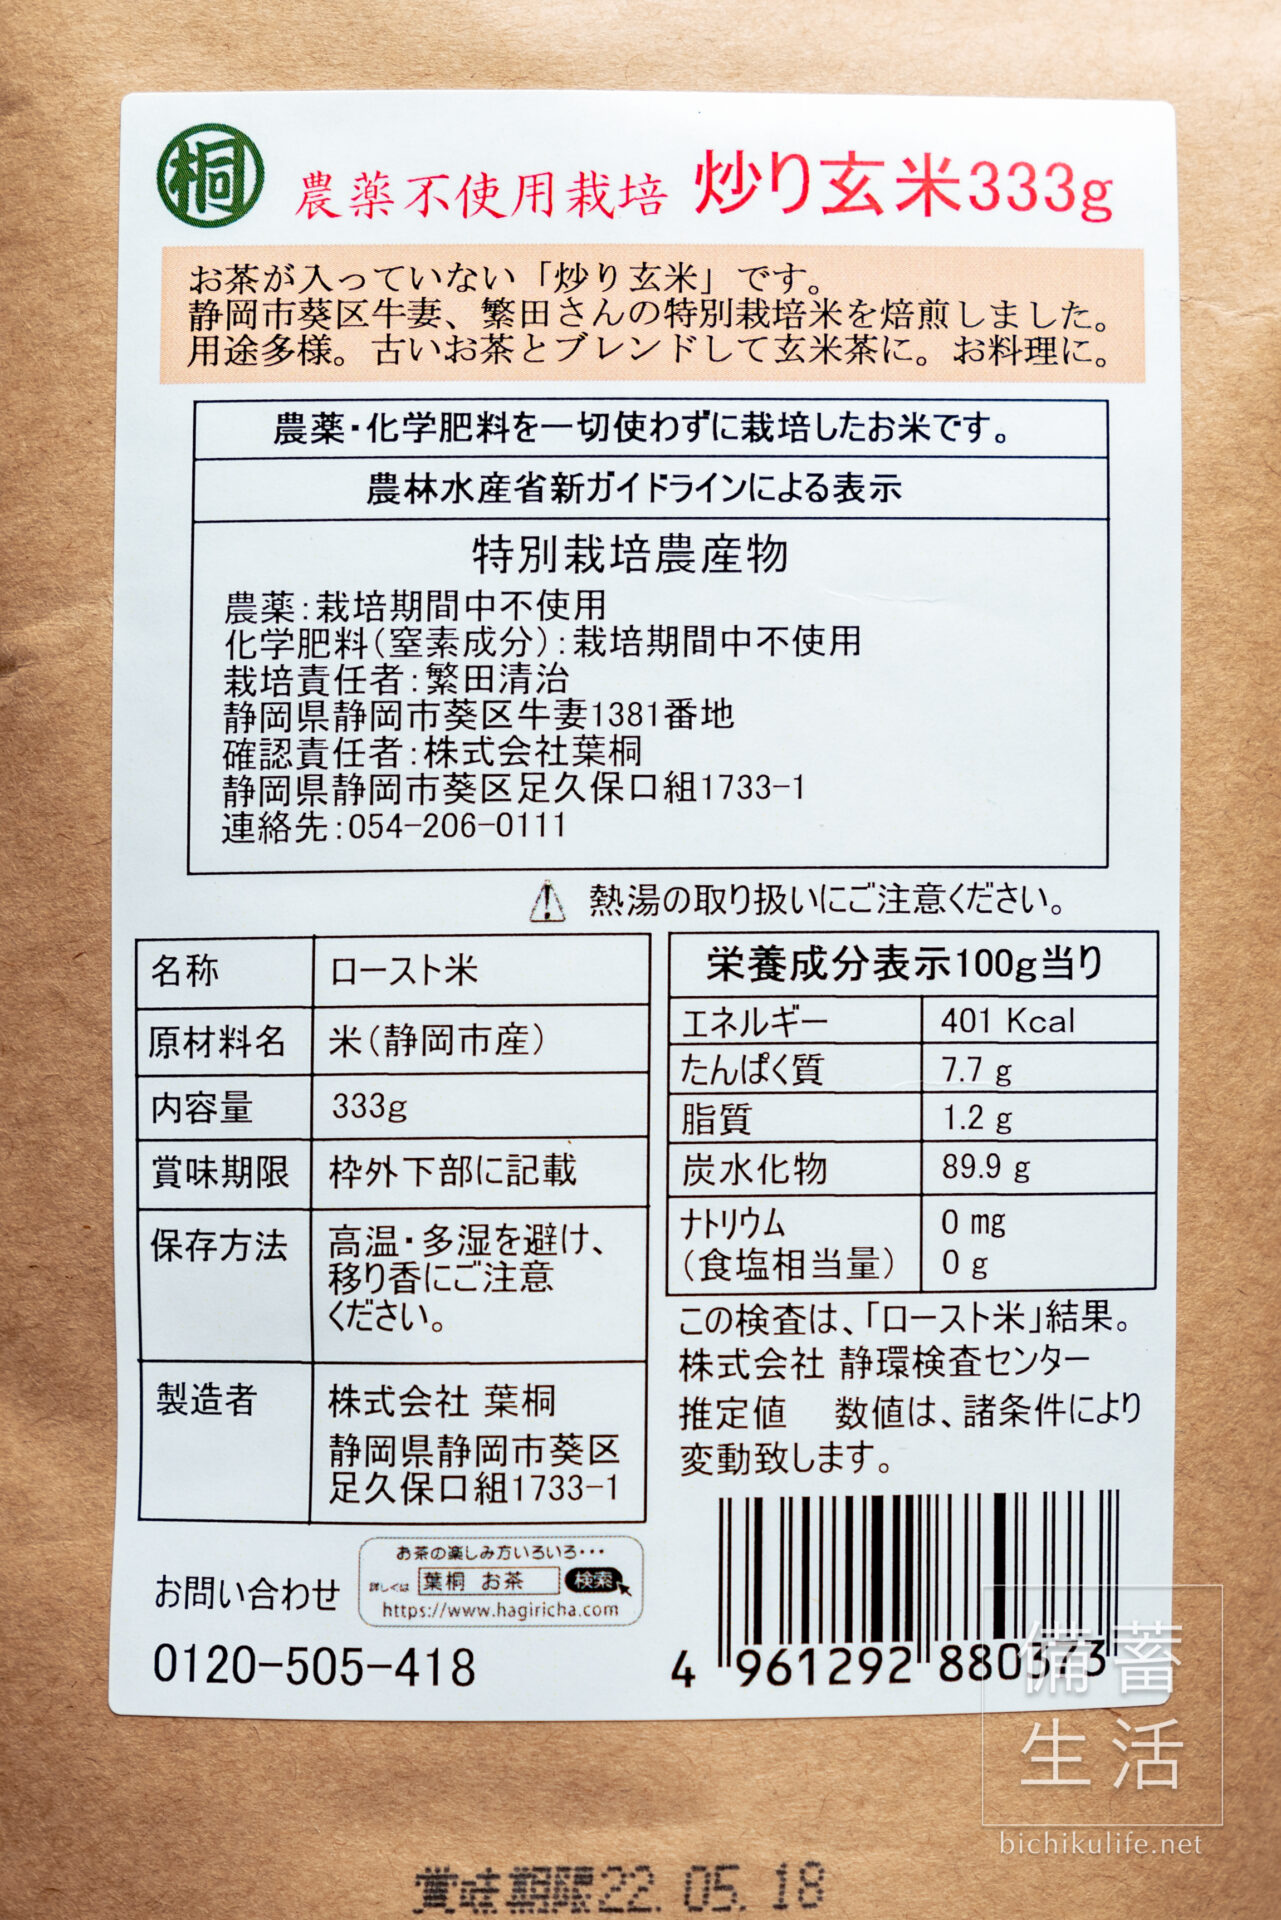 葉桐の炒り玄米 農薬不使用栽培 静岡市繁田さんの特別栽培米